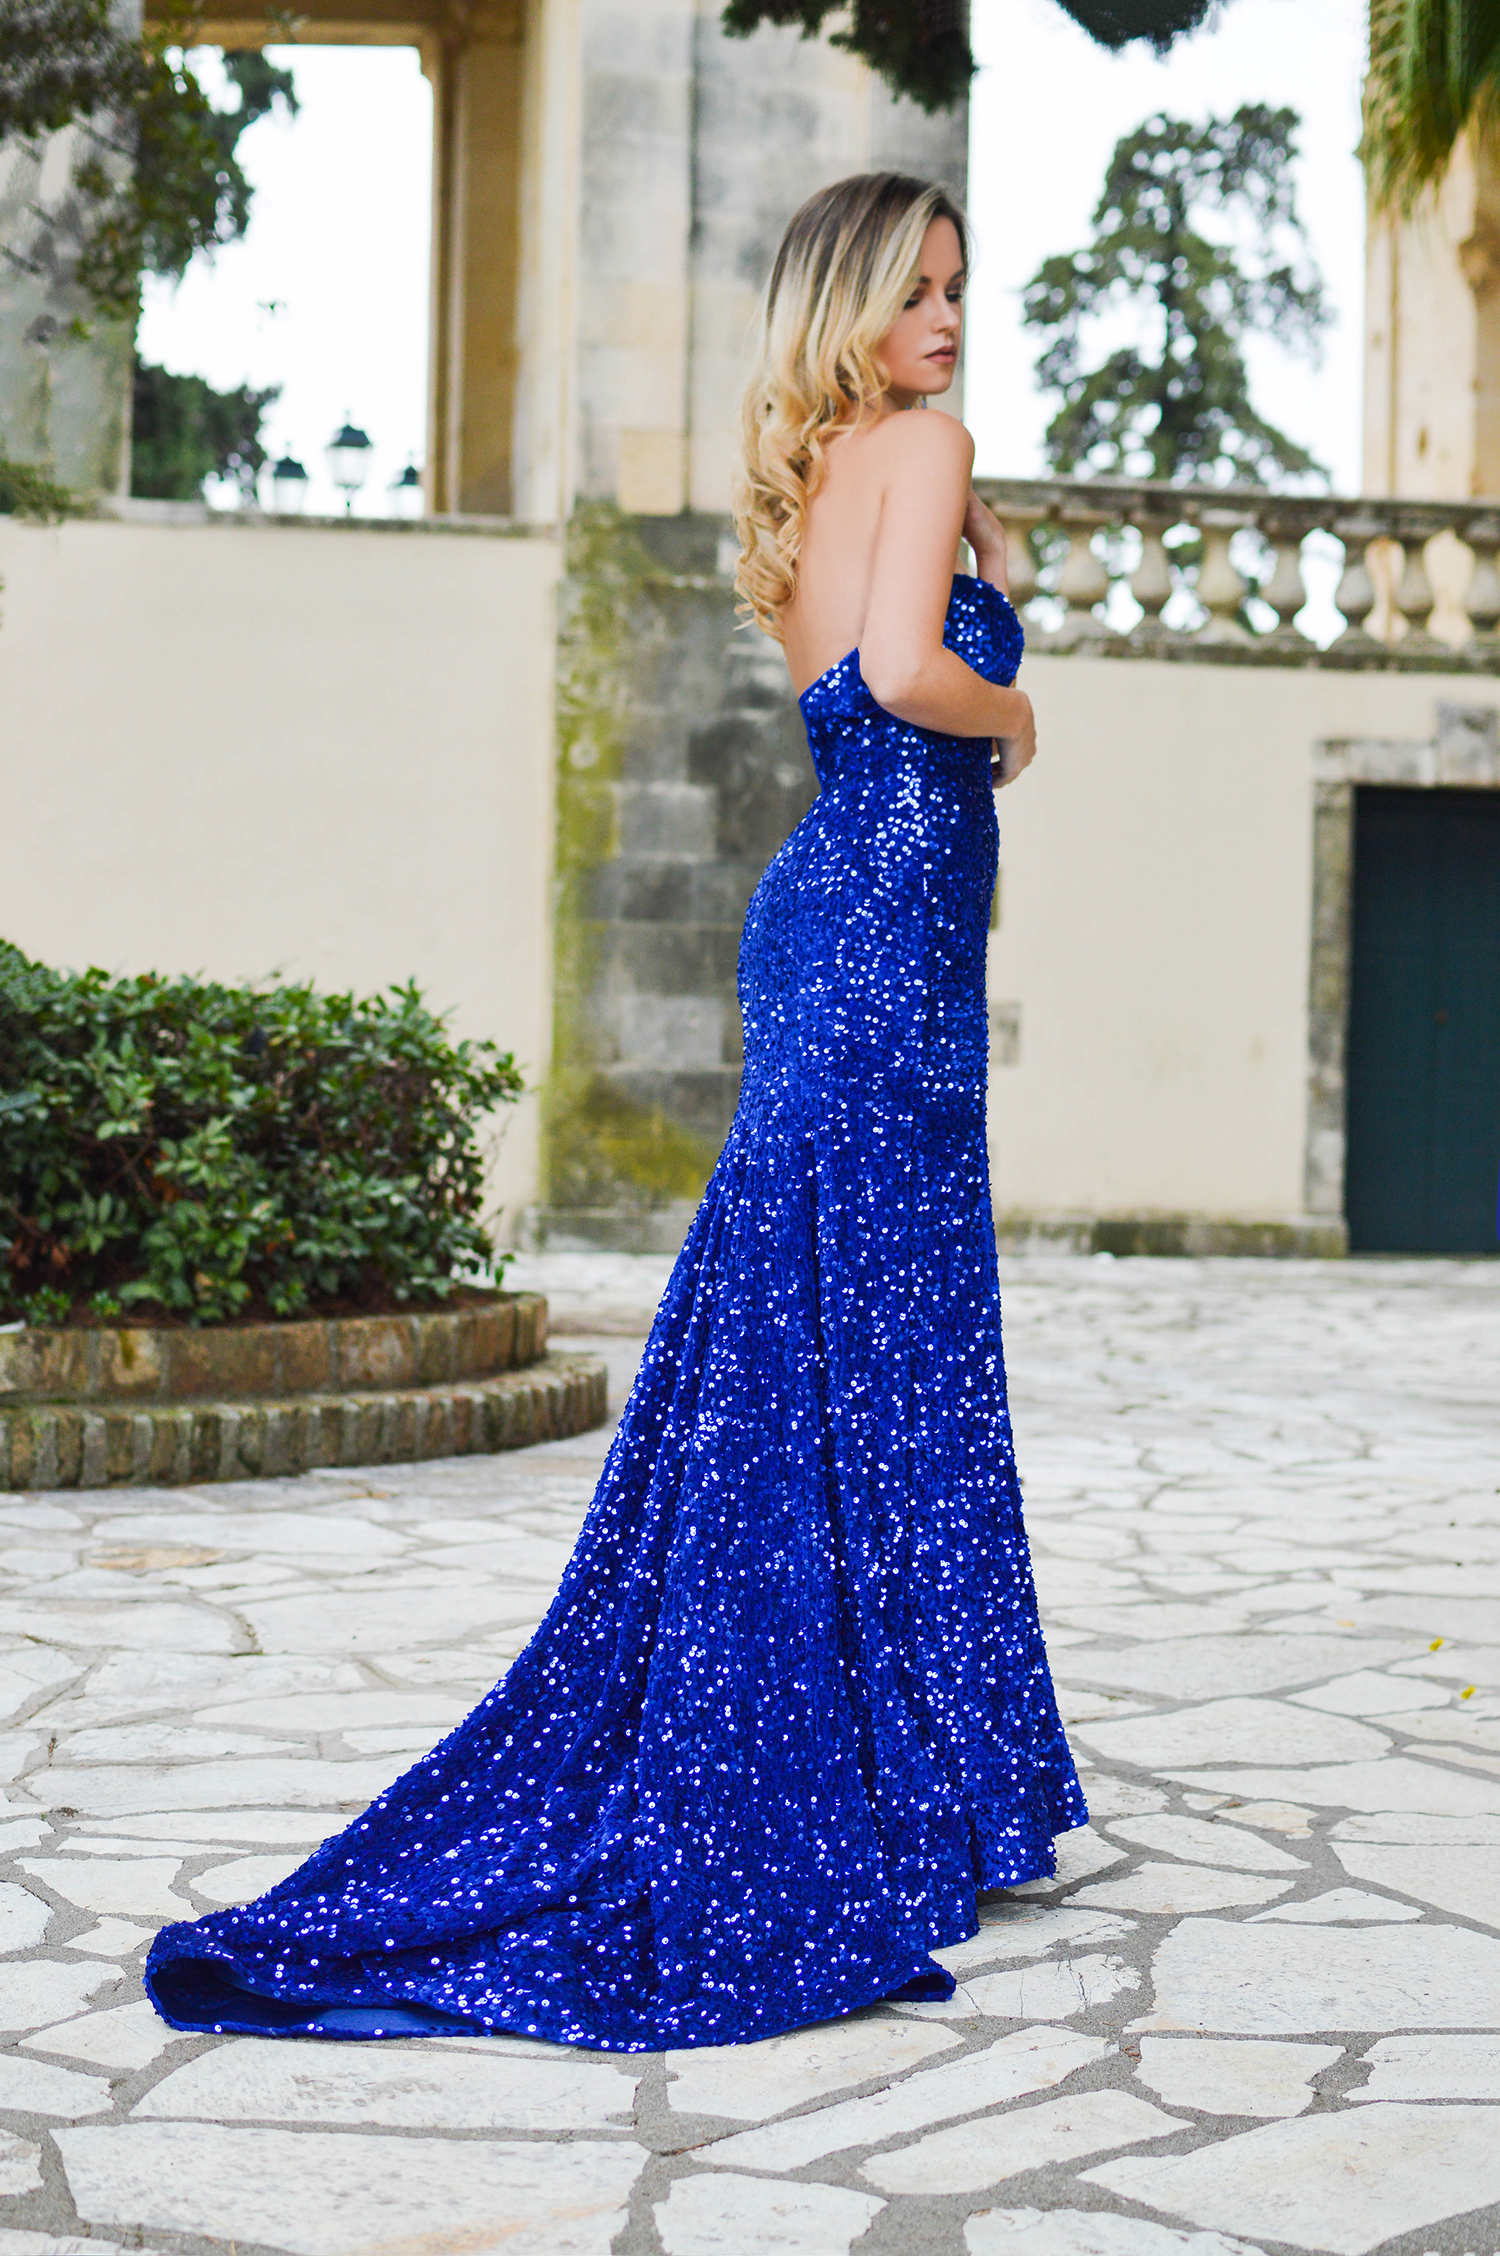 Glowing in Blue Sequins by Tamara Bellis